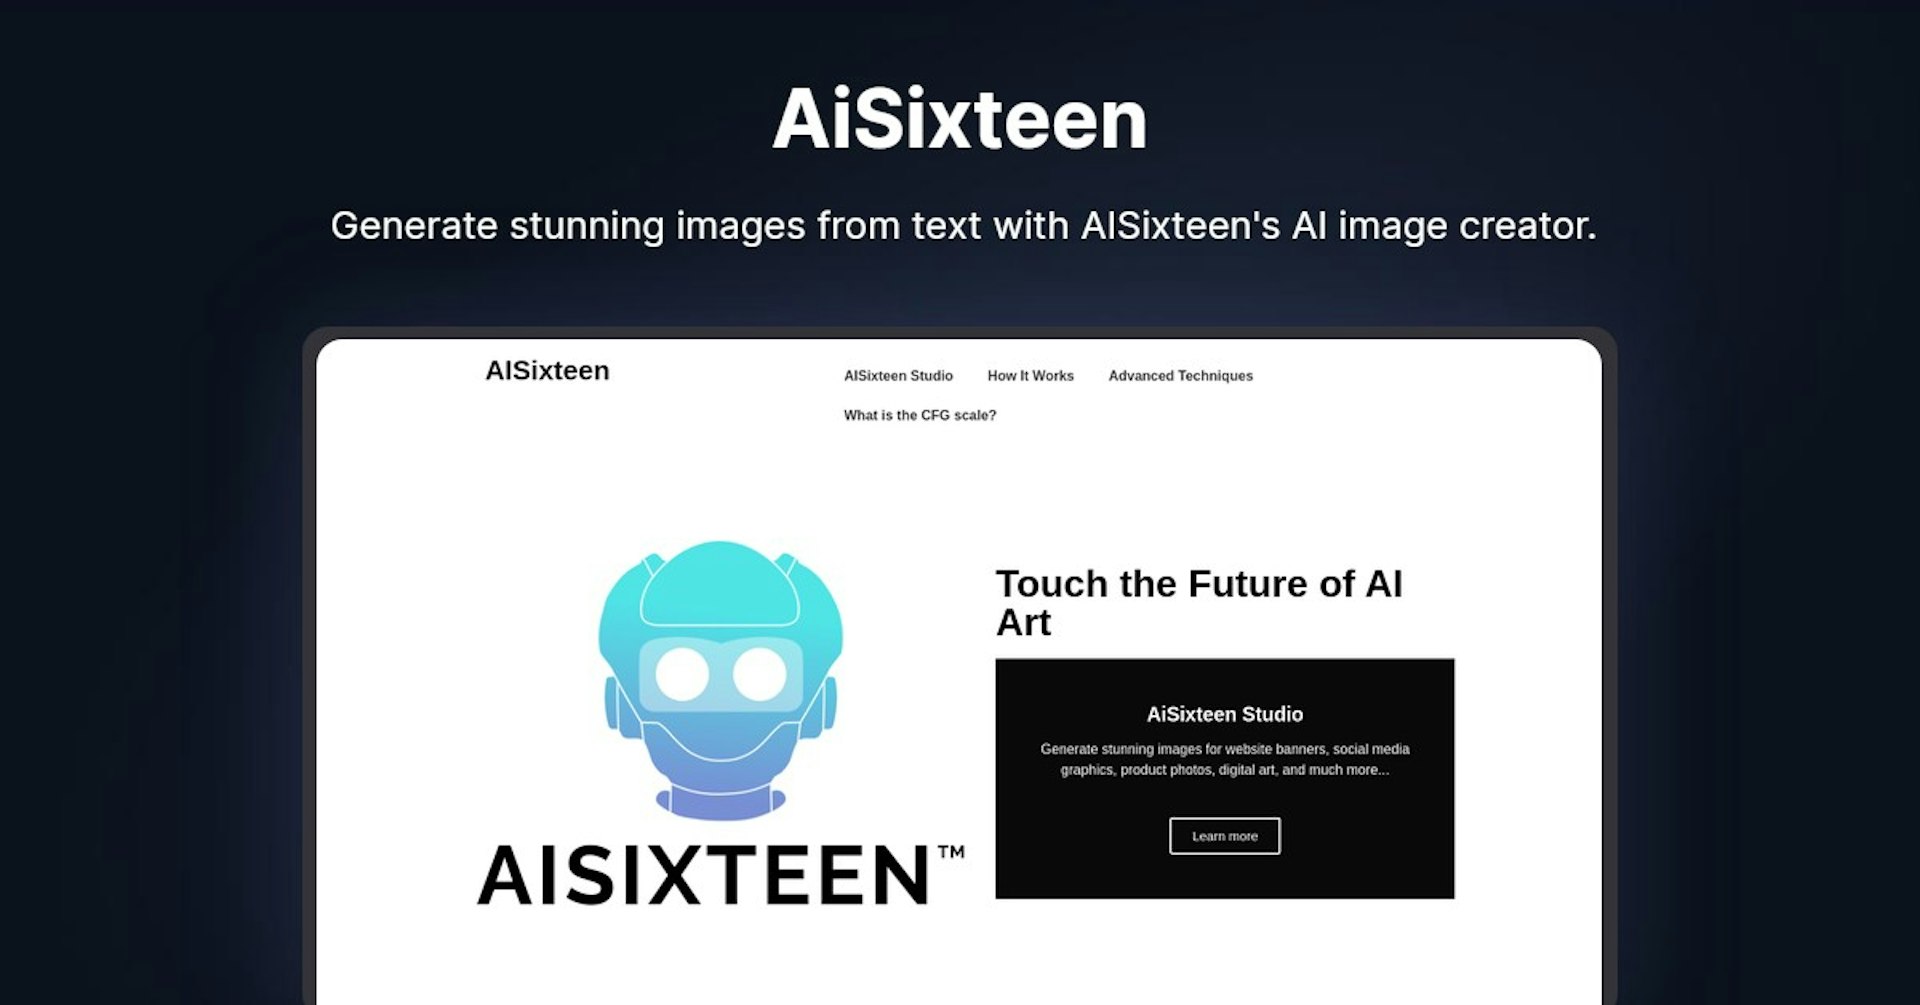 AISixteen